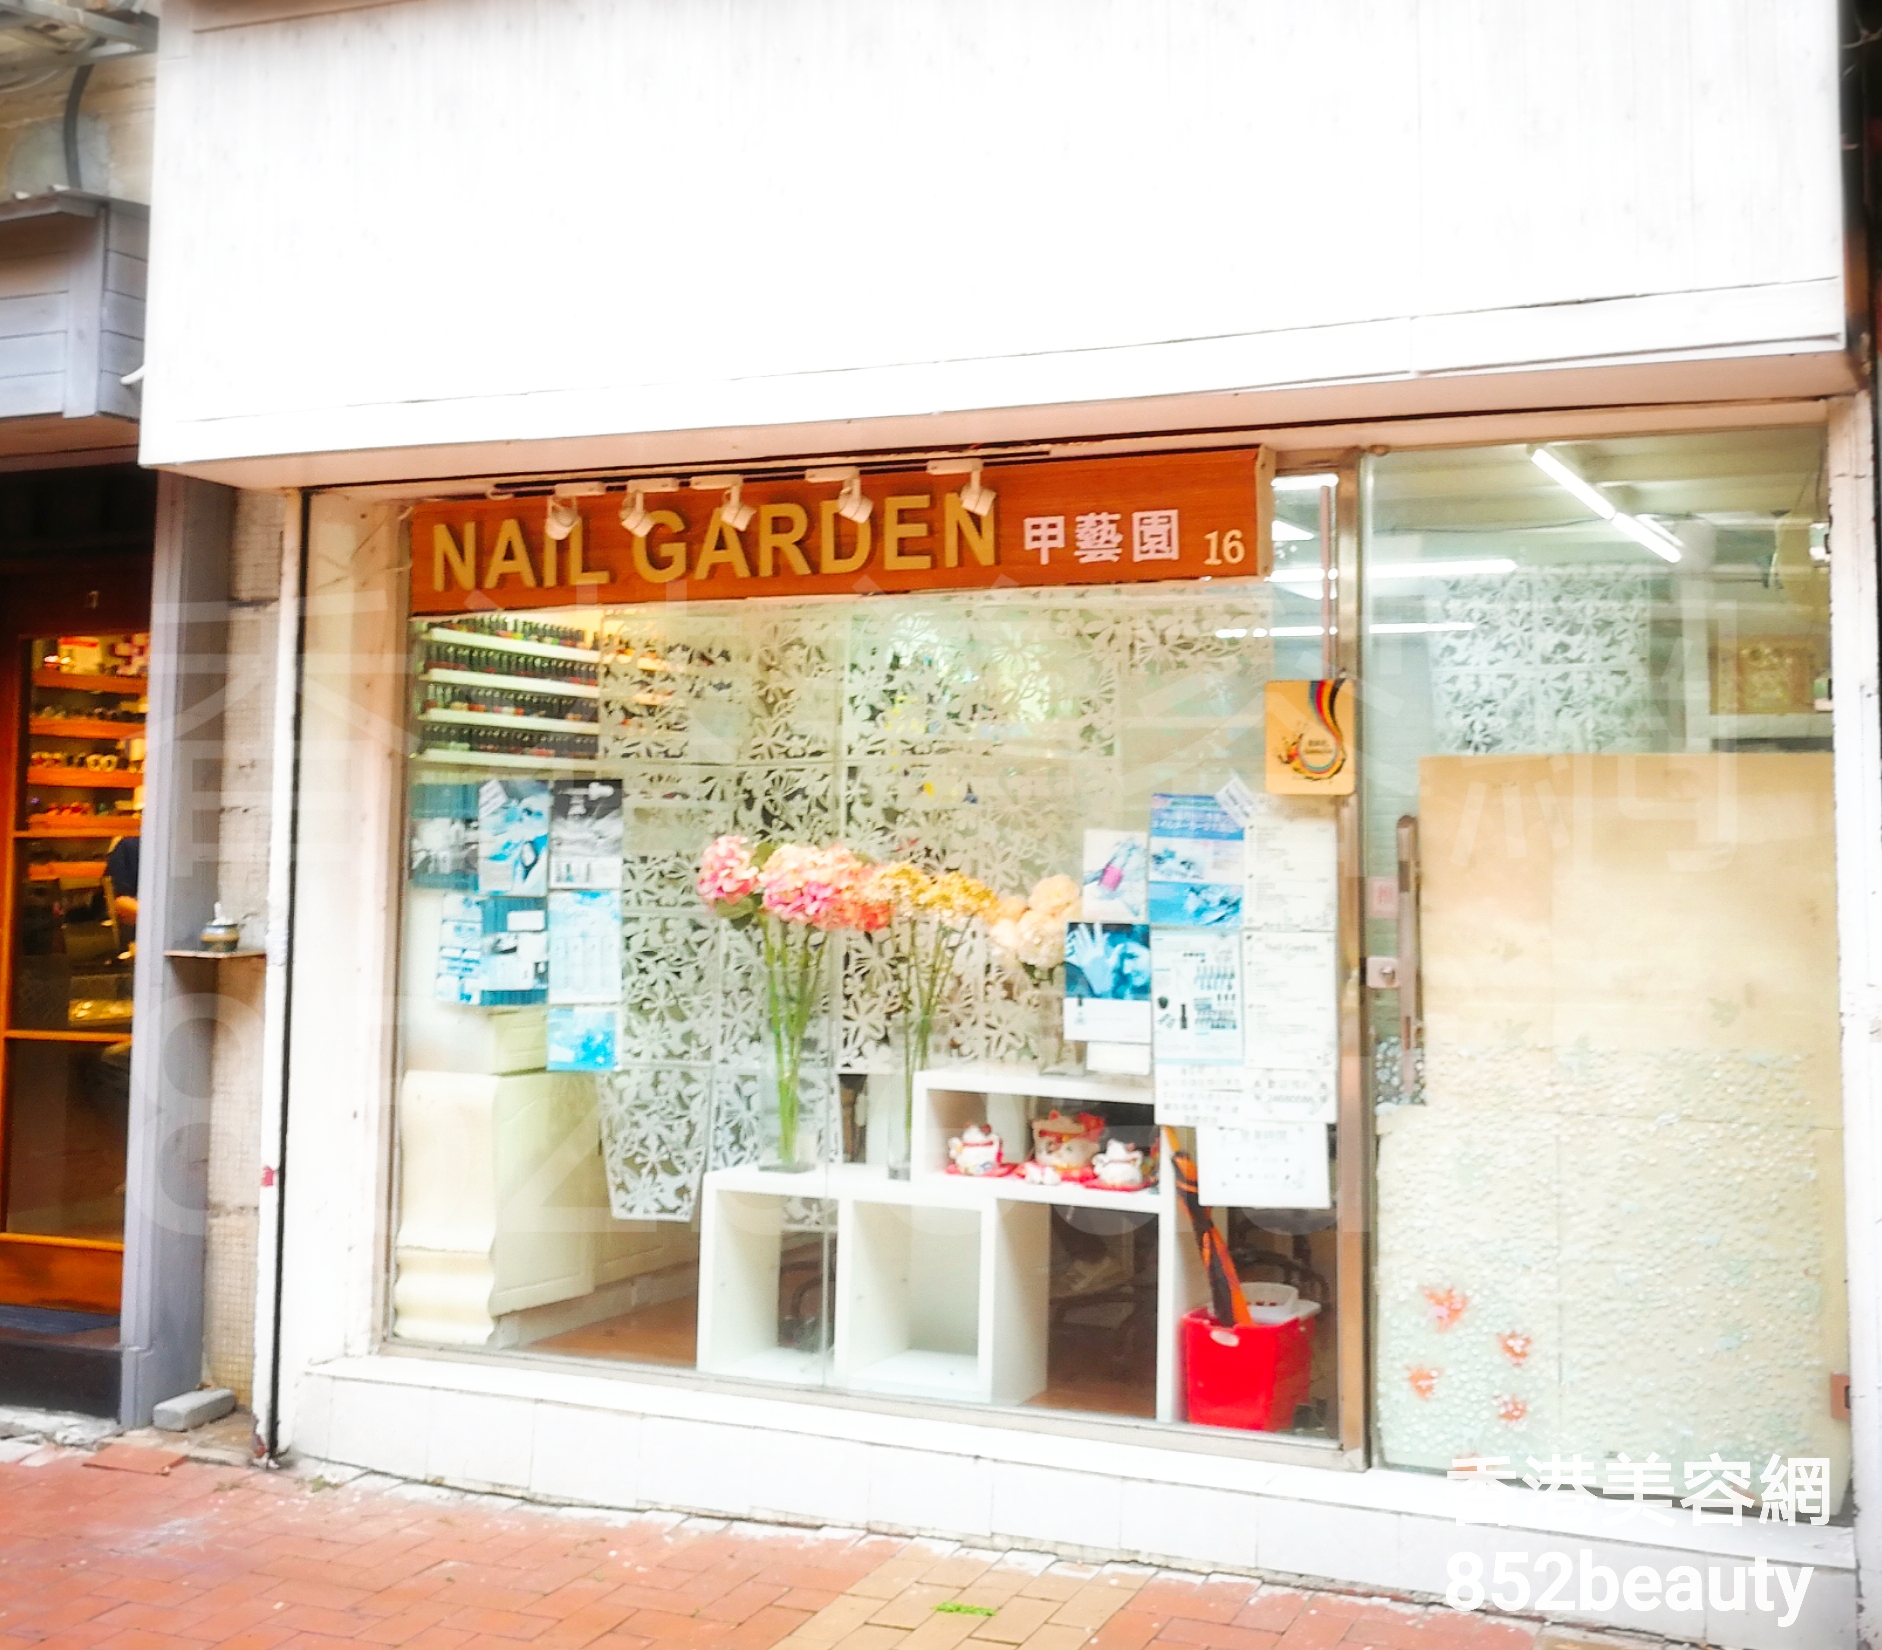 香港美容網 Hong Kong Beauty Salon 美容院 / 美容師: Nail Garden 甲藝園